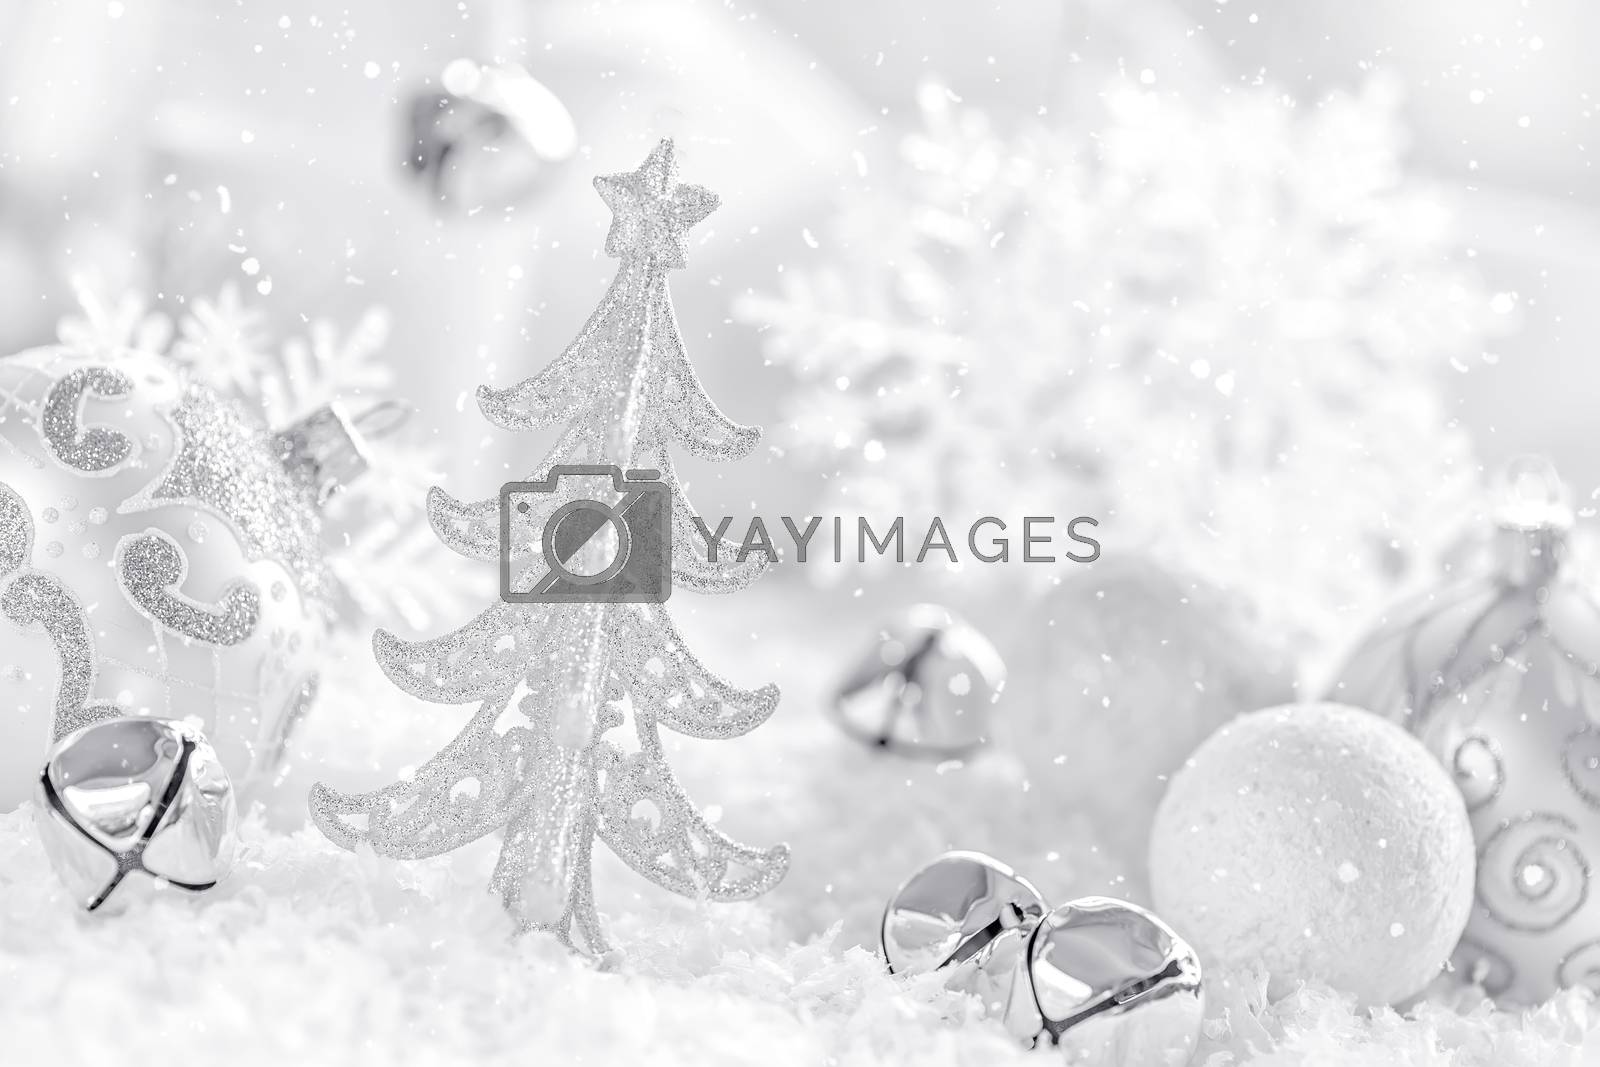 Royalty free image of Christmas decoration by yelenayemchuk